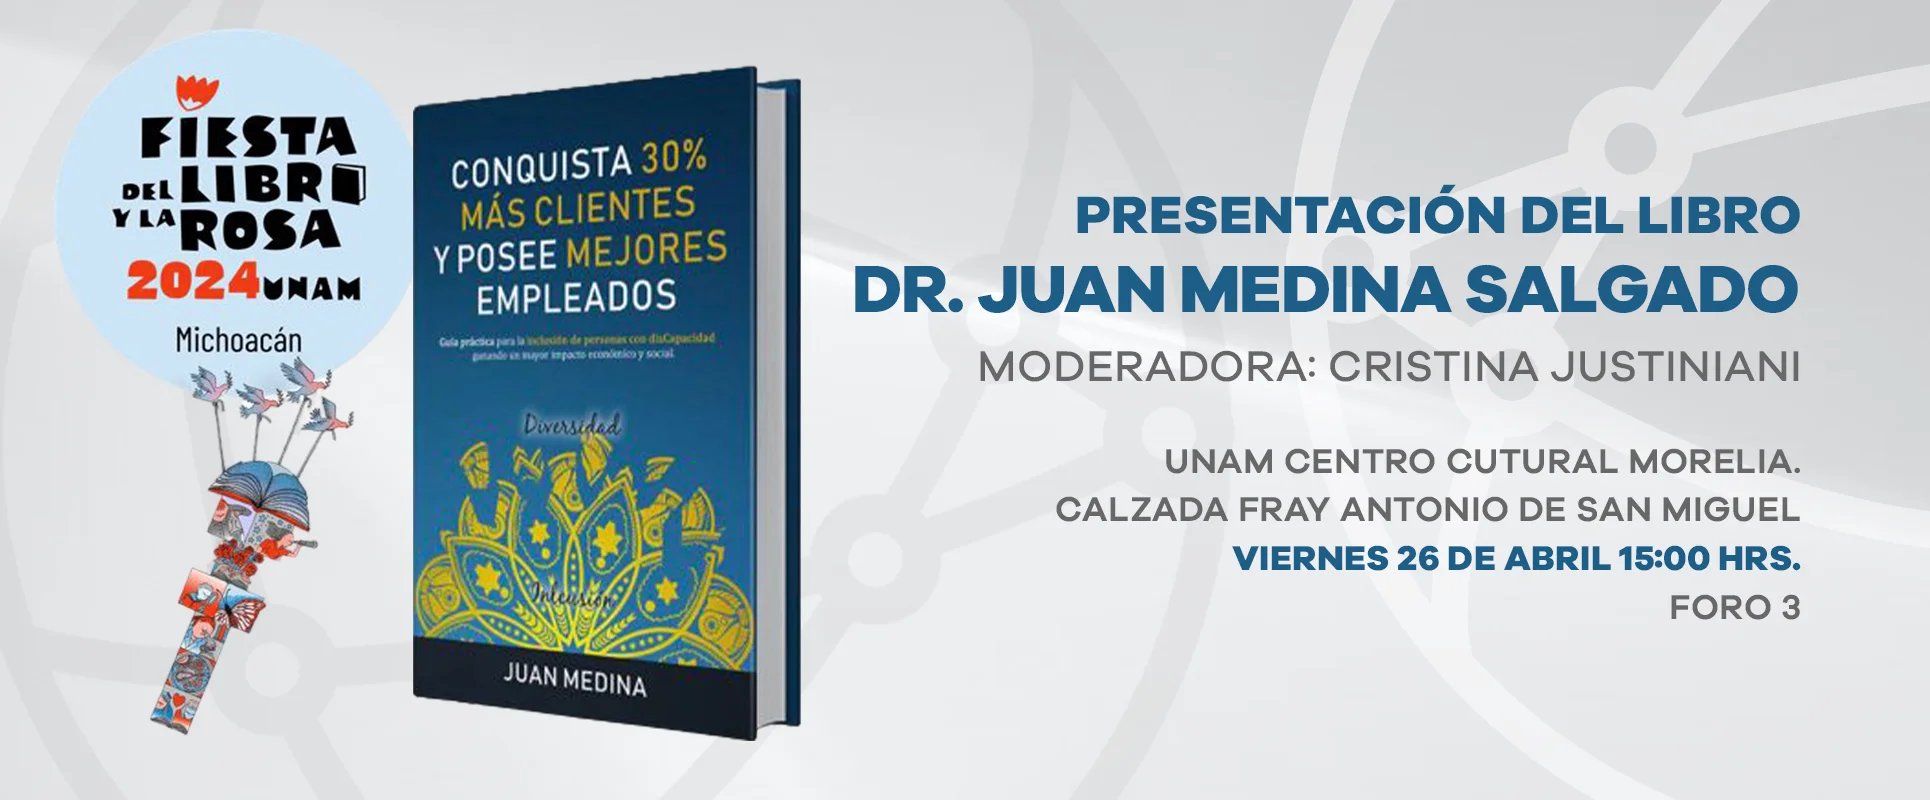 Presentación del Libro del Dr. Juan Medina Salgado